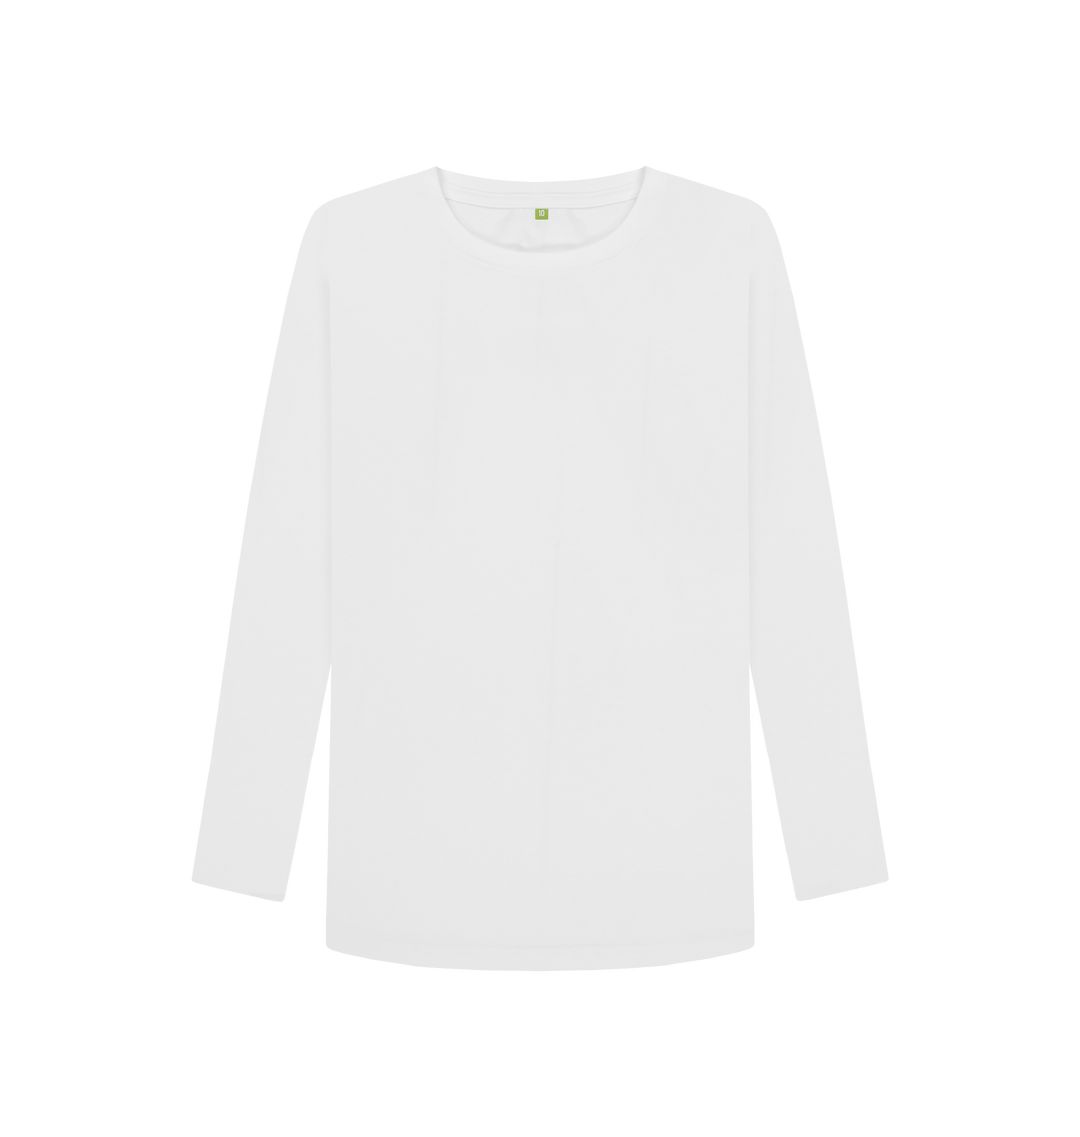 White Women's Plain Long Sleeve T-shirt